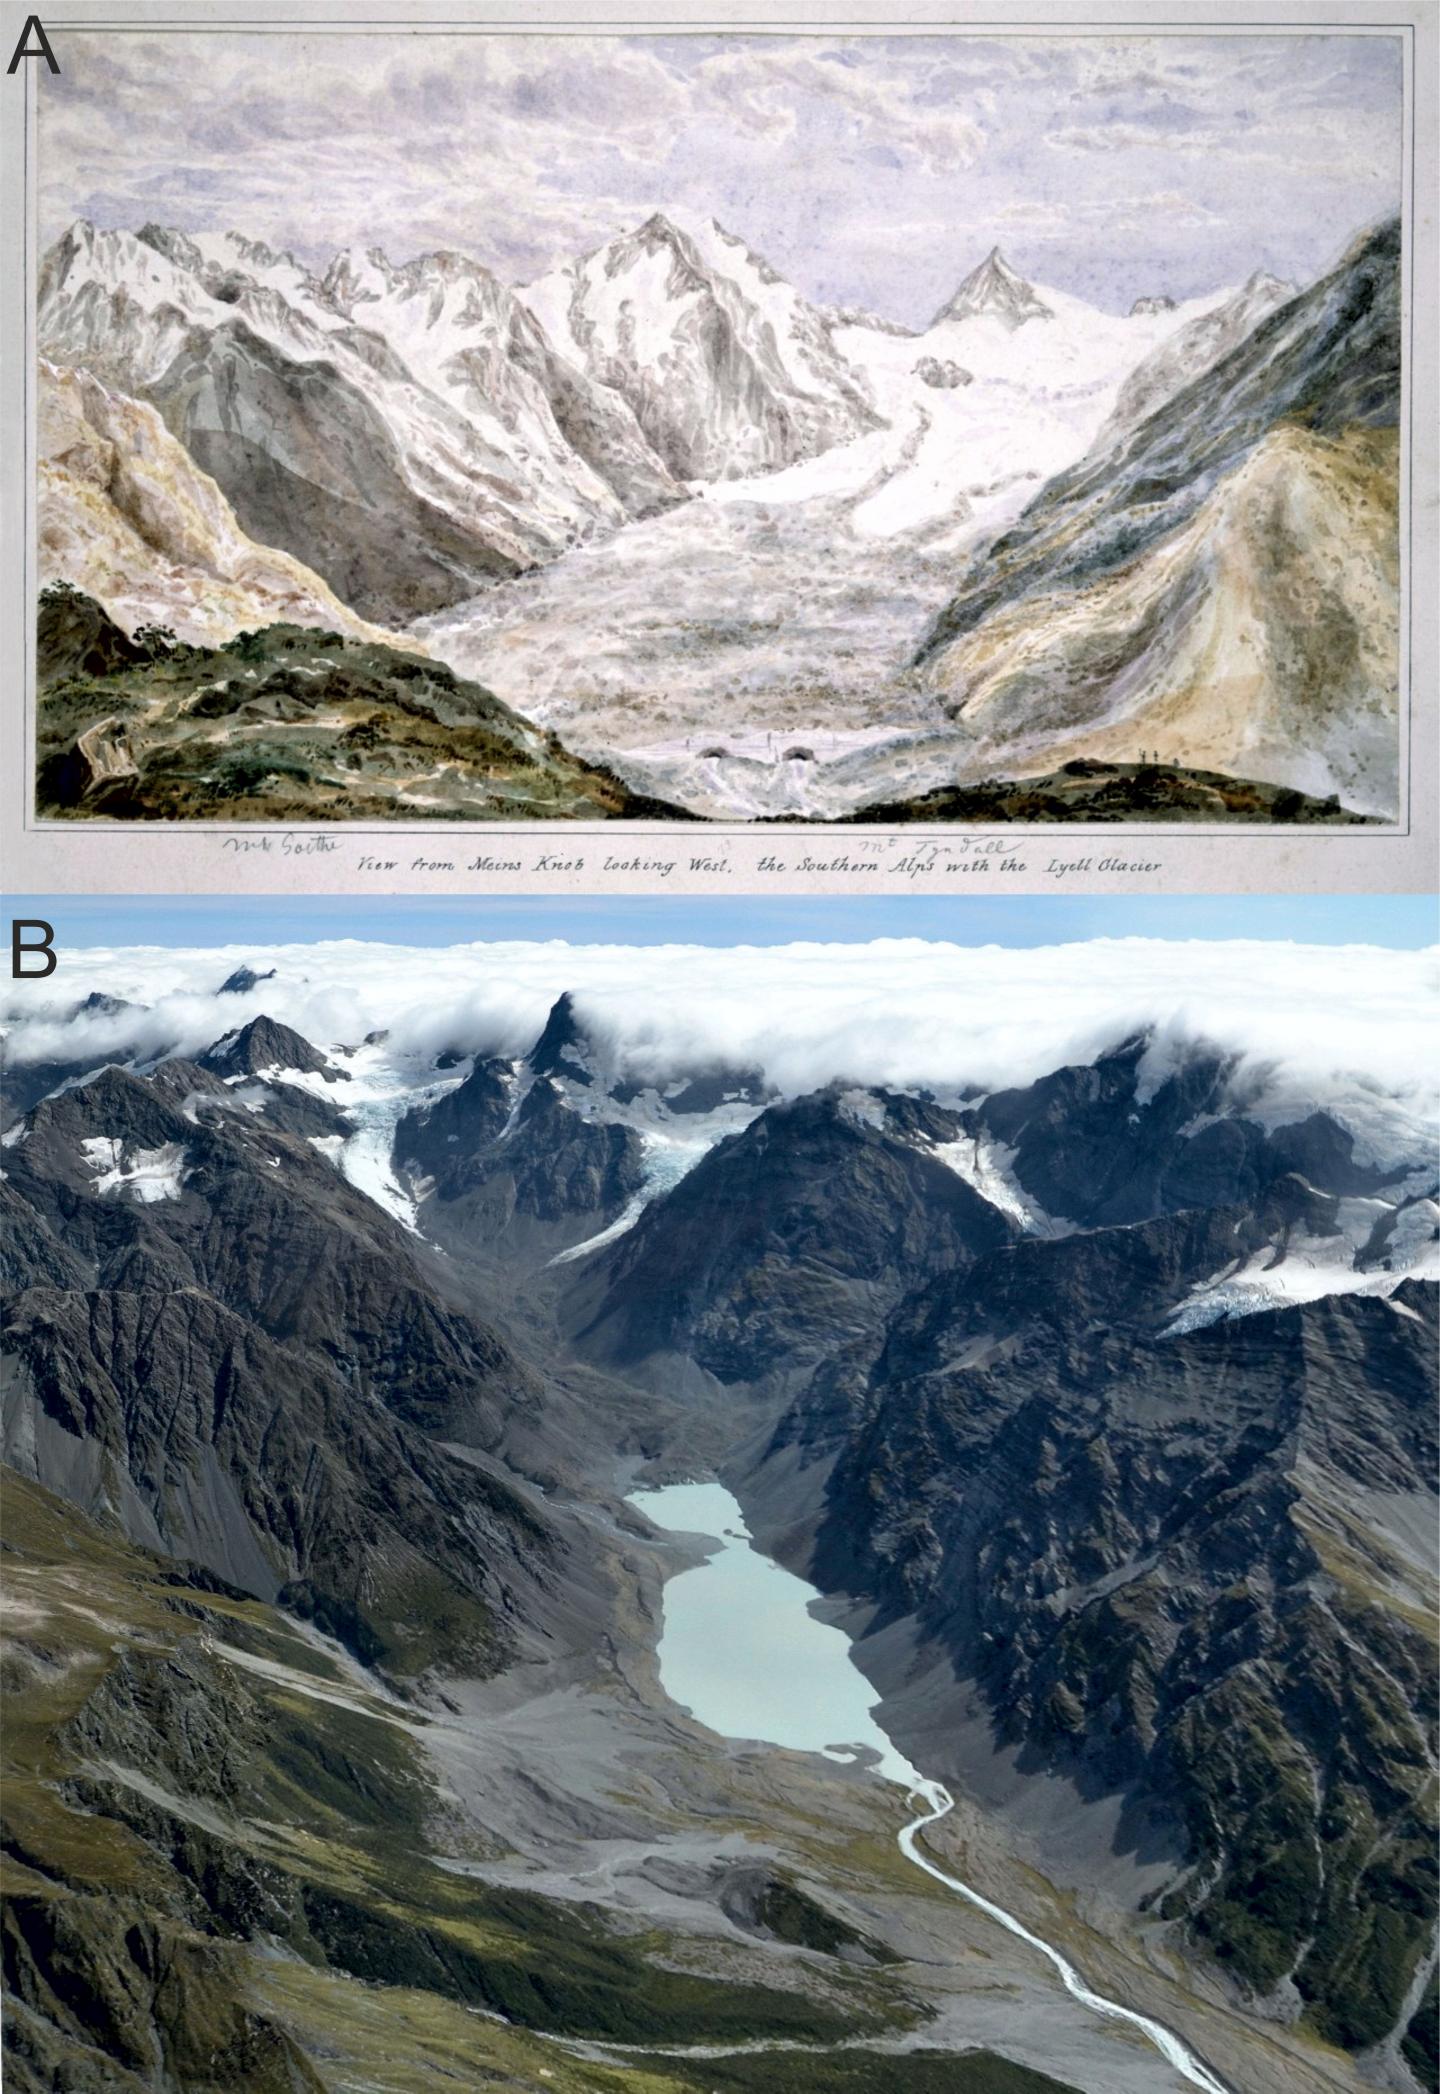 Lyell Glacier Comparison 1866 and 2018